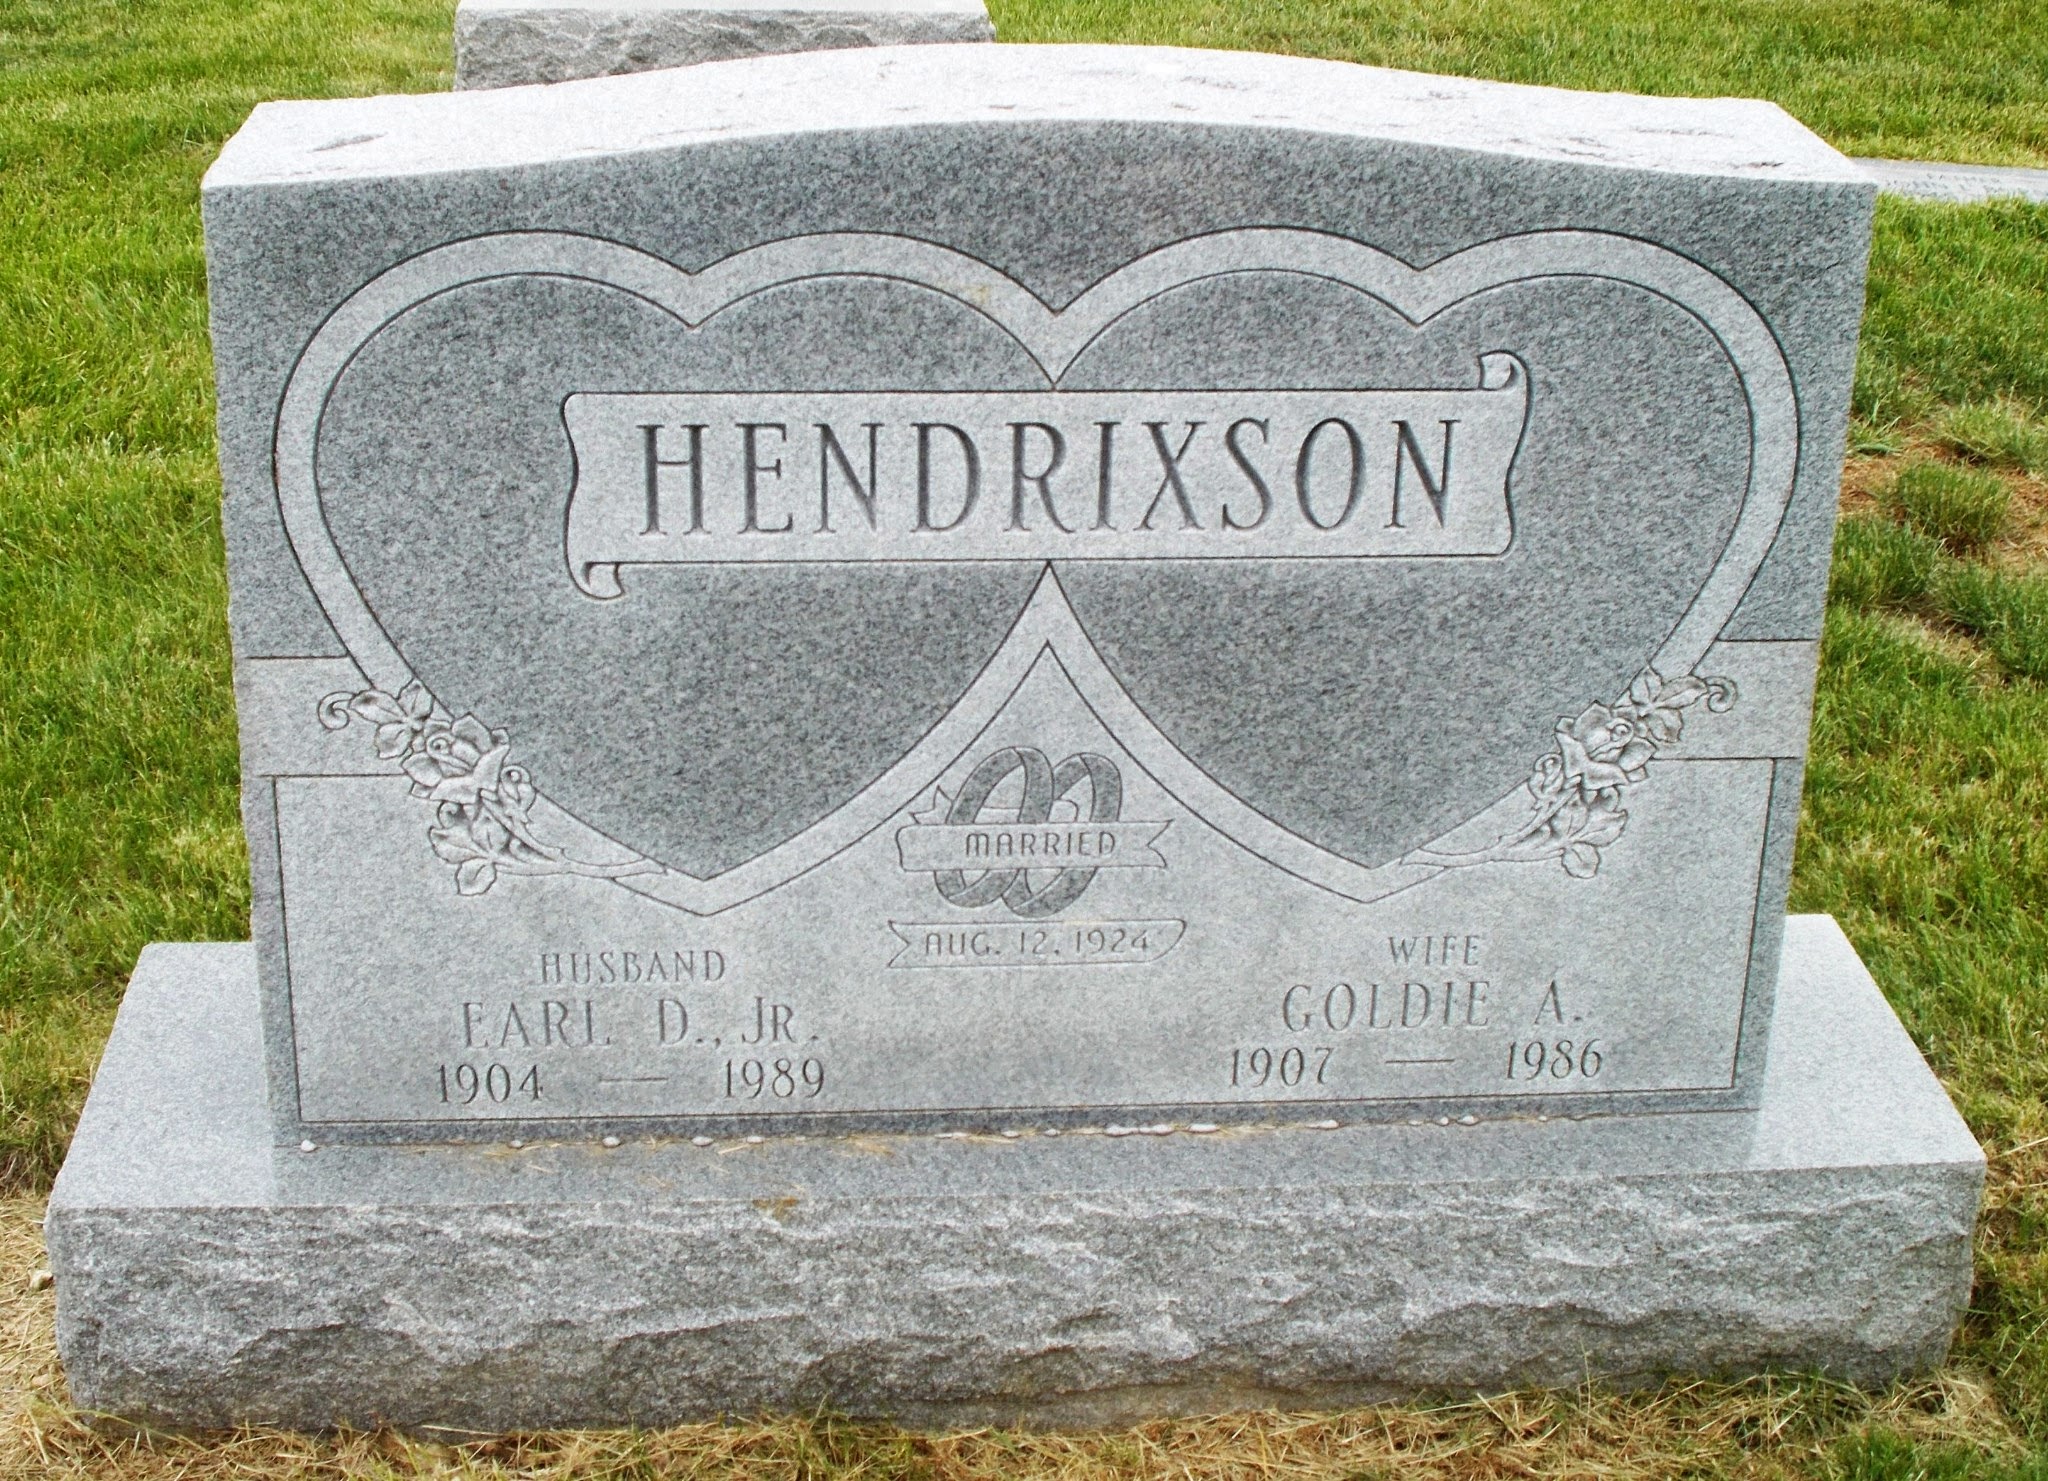 Earl D Hendrixson, Jr